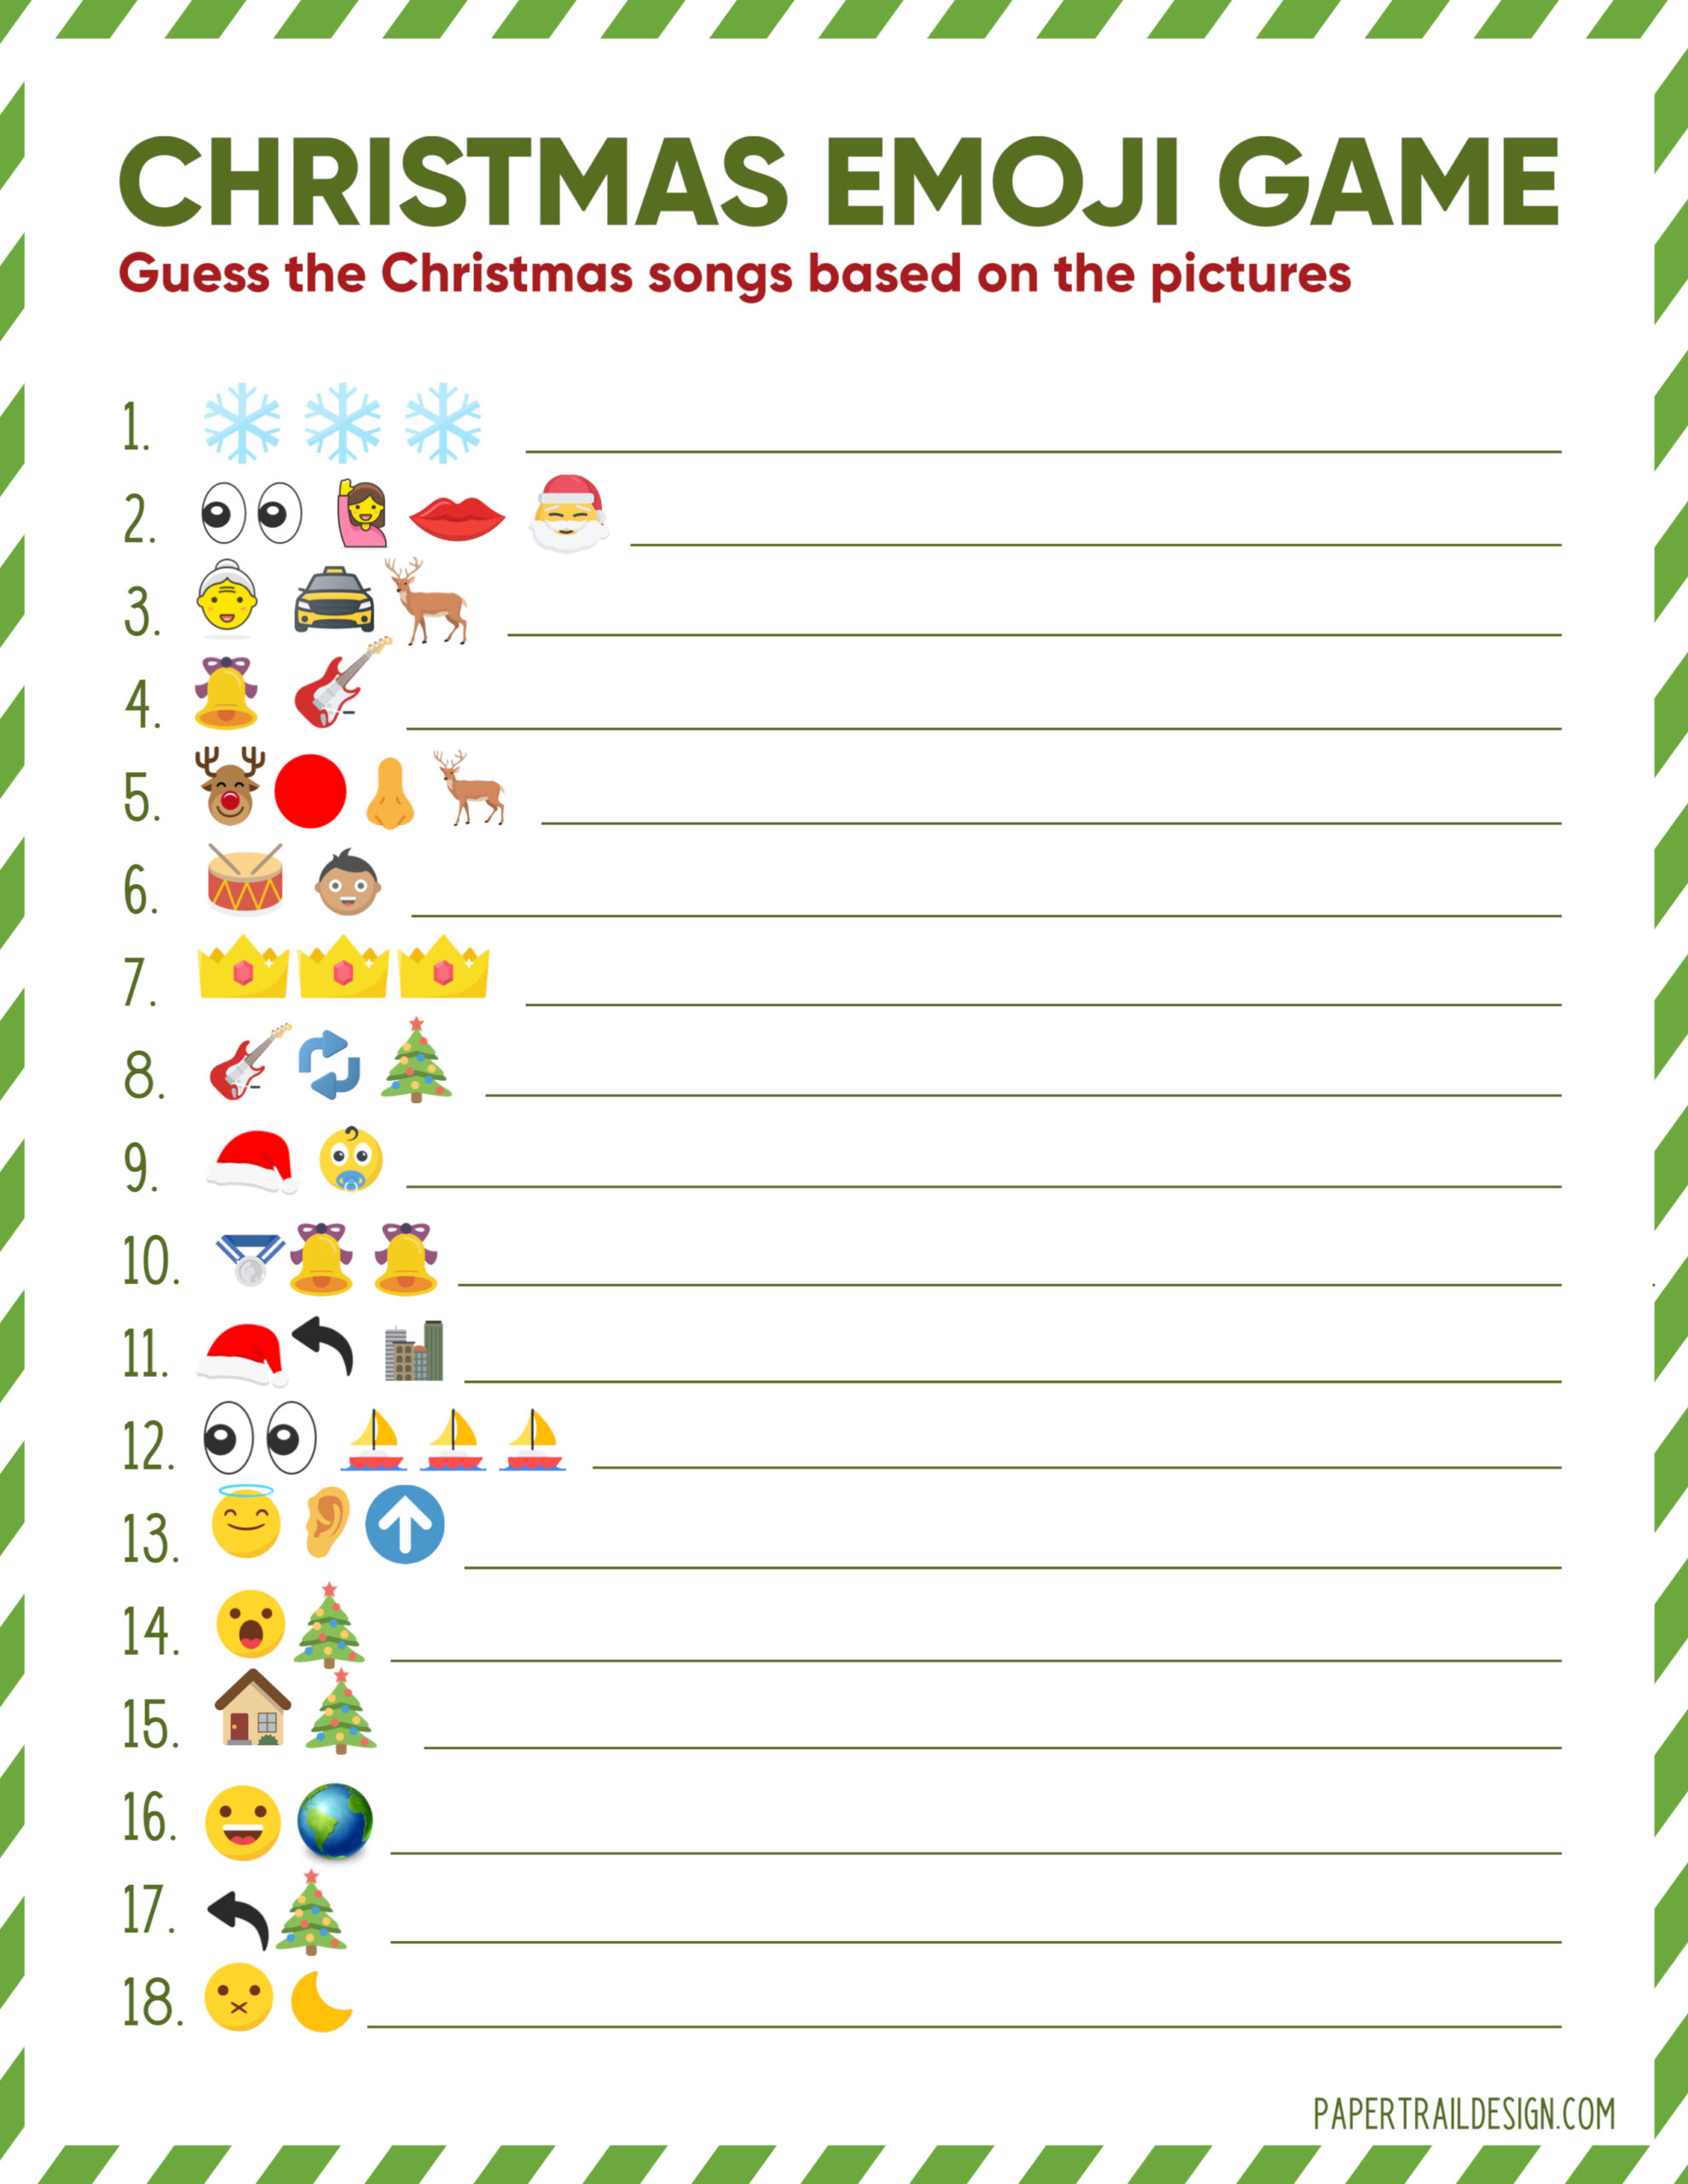 Free Printable Christmas Song Emoji Game